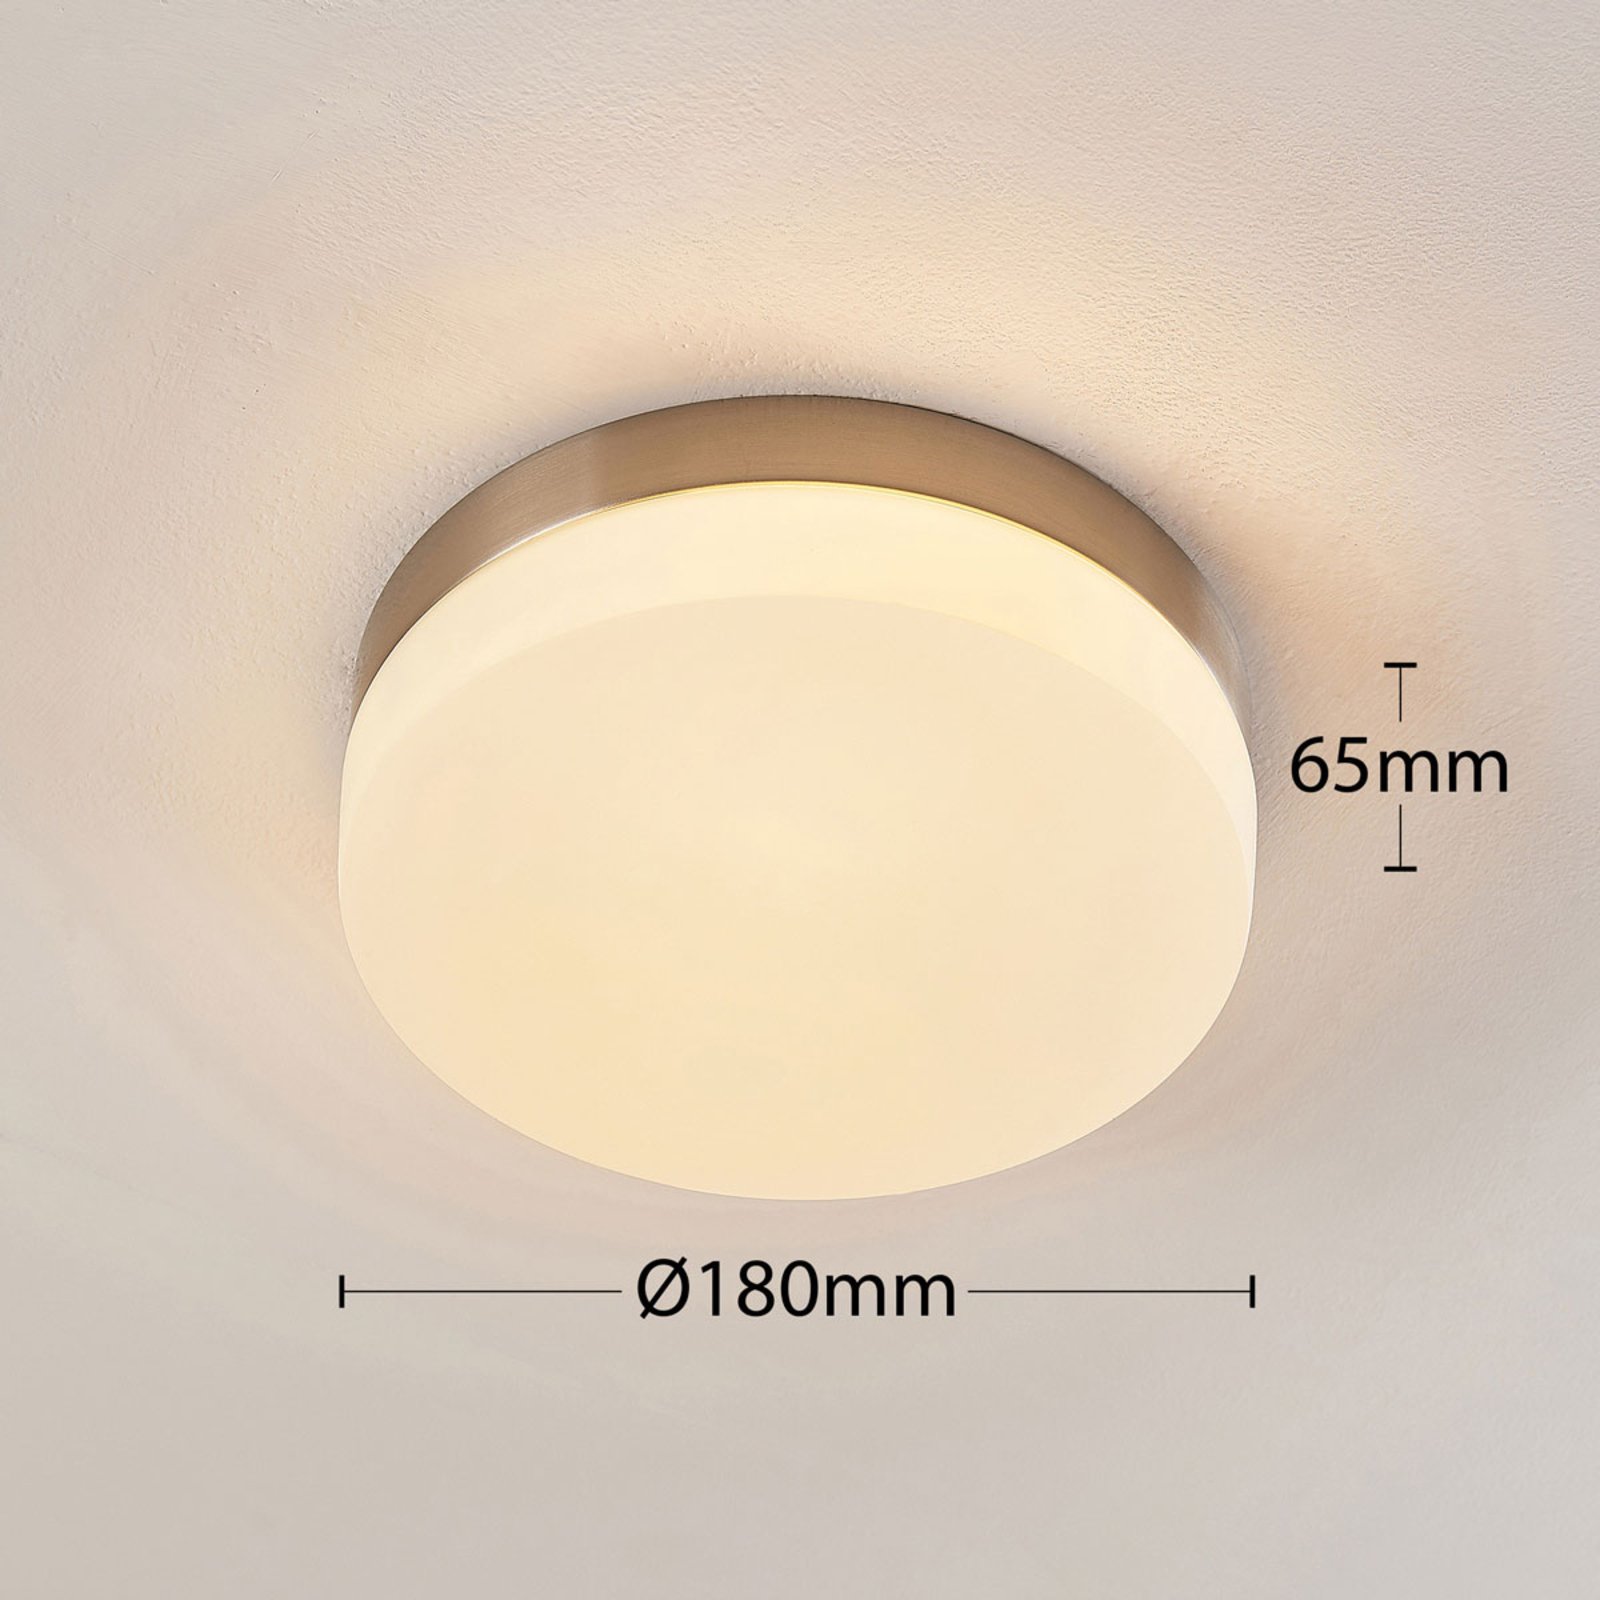 Φωτιστικό οροφής Amilia για το μπάνιο με γυάλινο κάλυμμα, Ø 18 cm